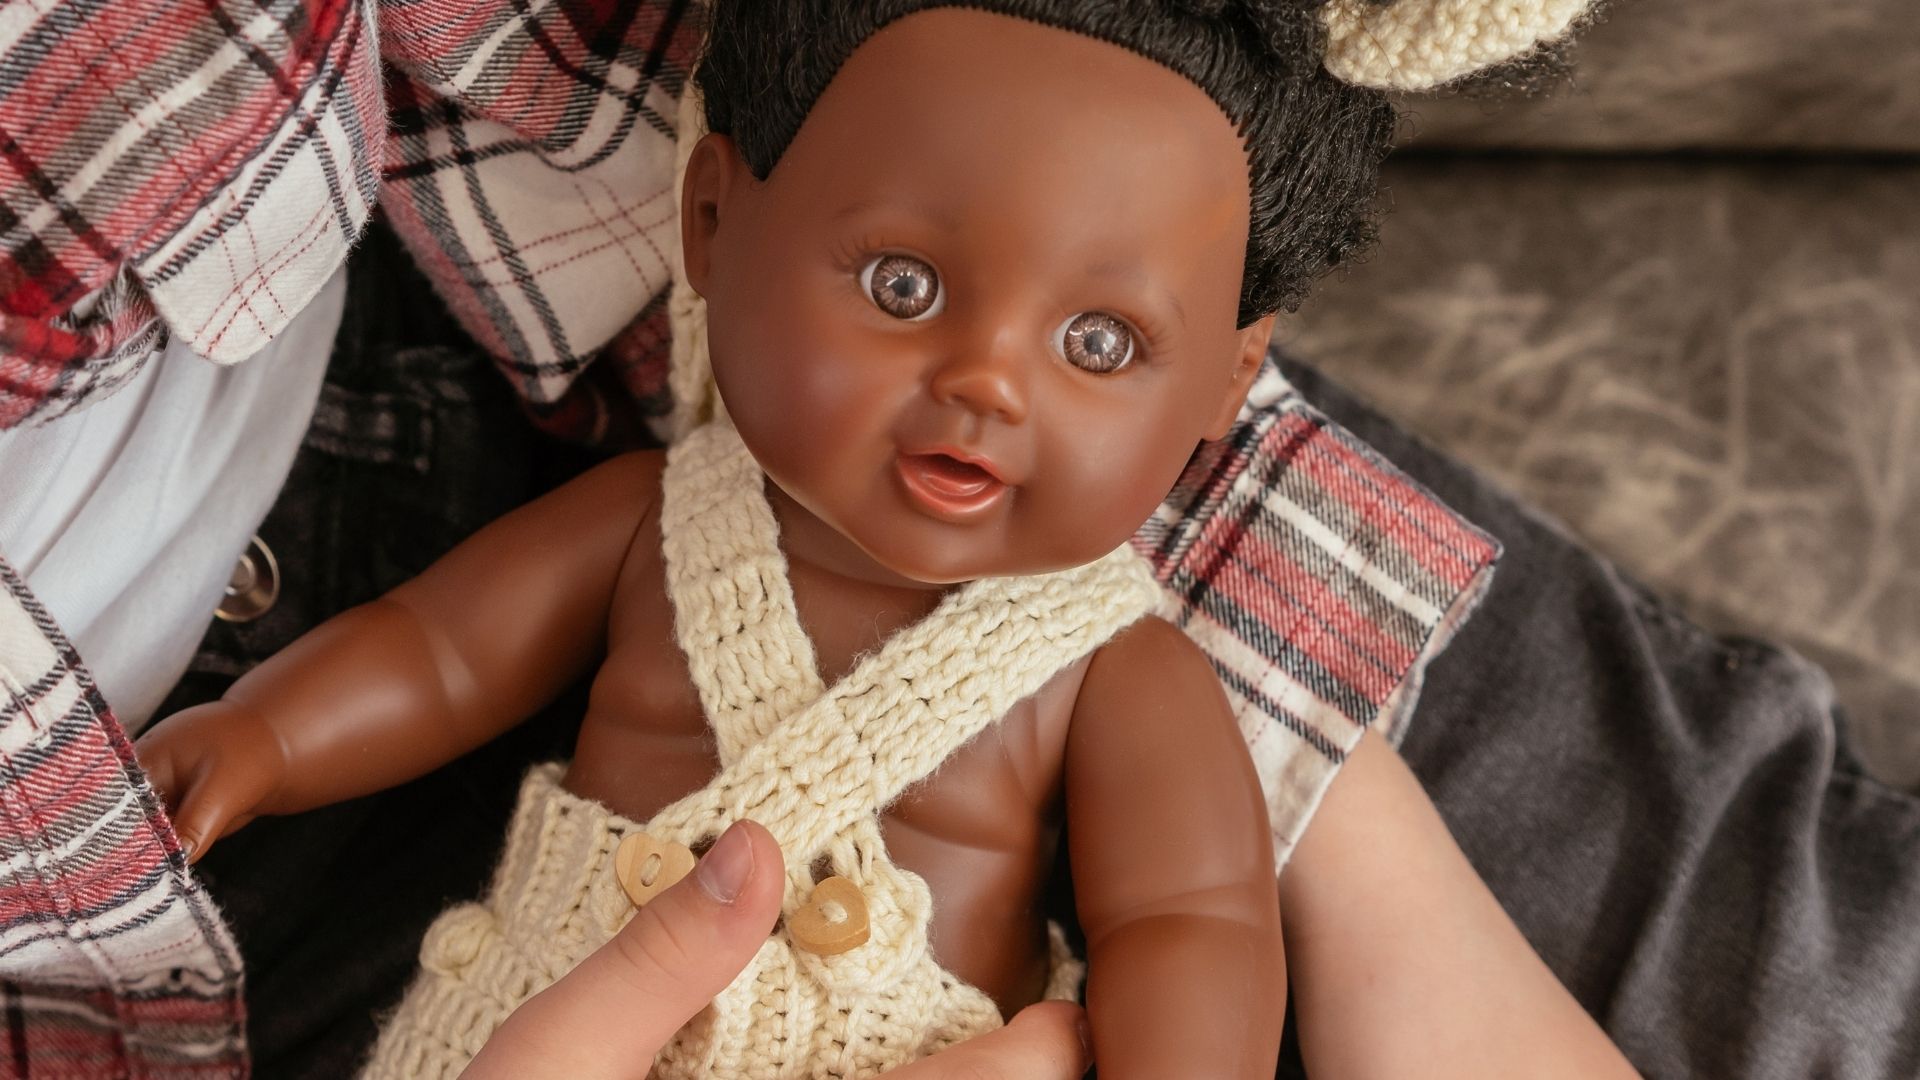 Les poupées « inclusives » ont-elles un impact positif sur les enfants qui jouent avec ?